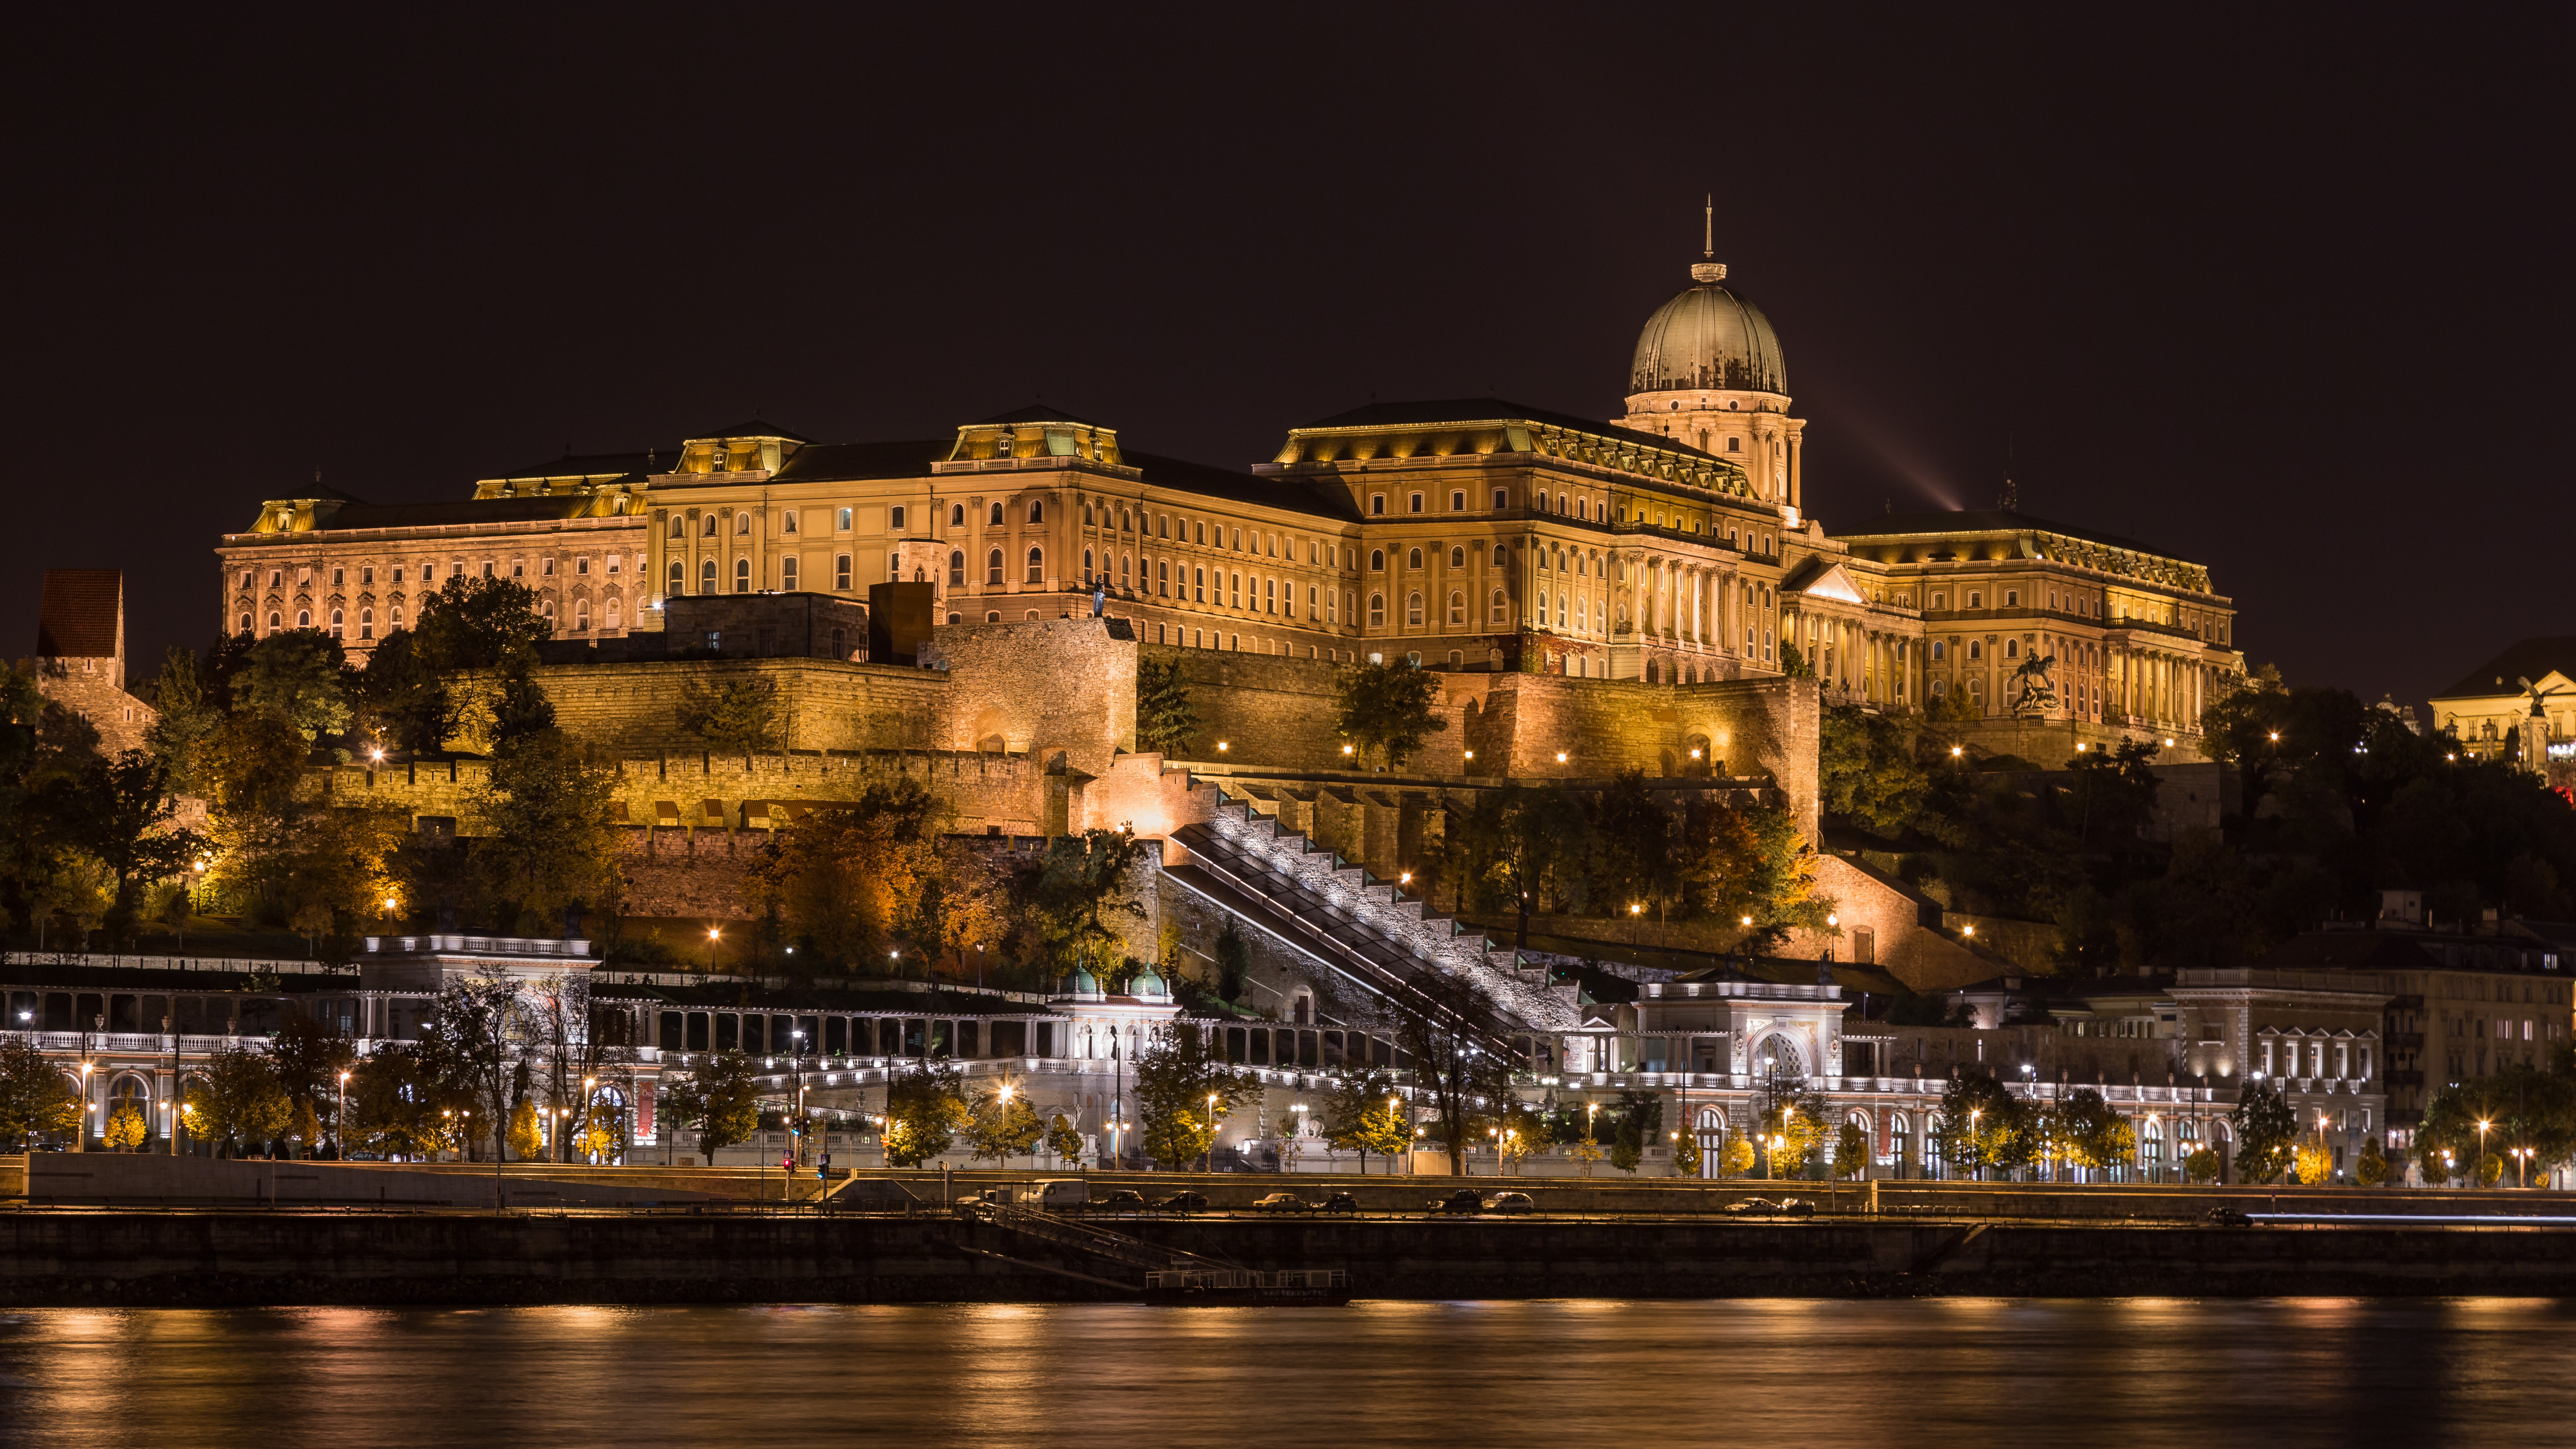 Buda Castle and Castle Garden Bazaar • Budapest, Hungary